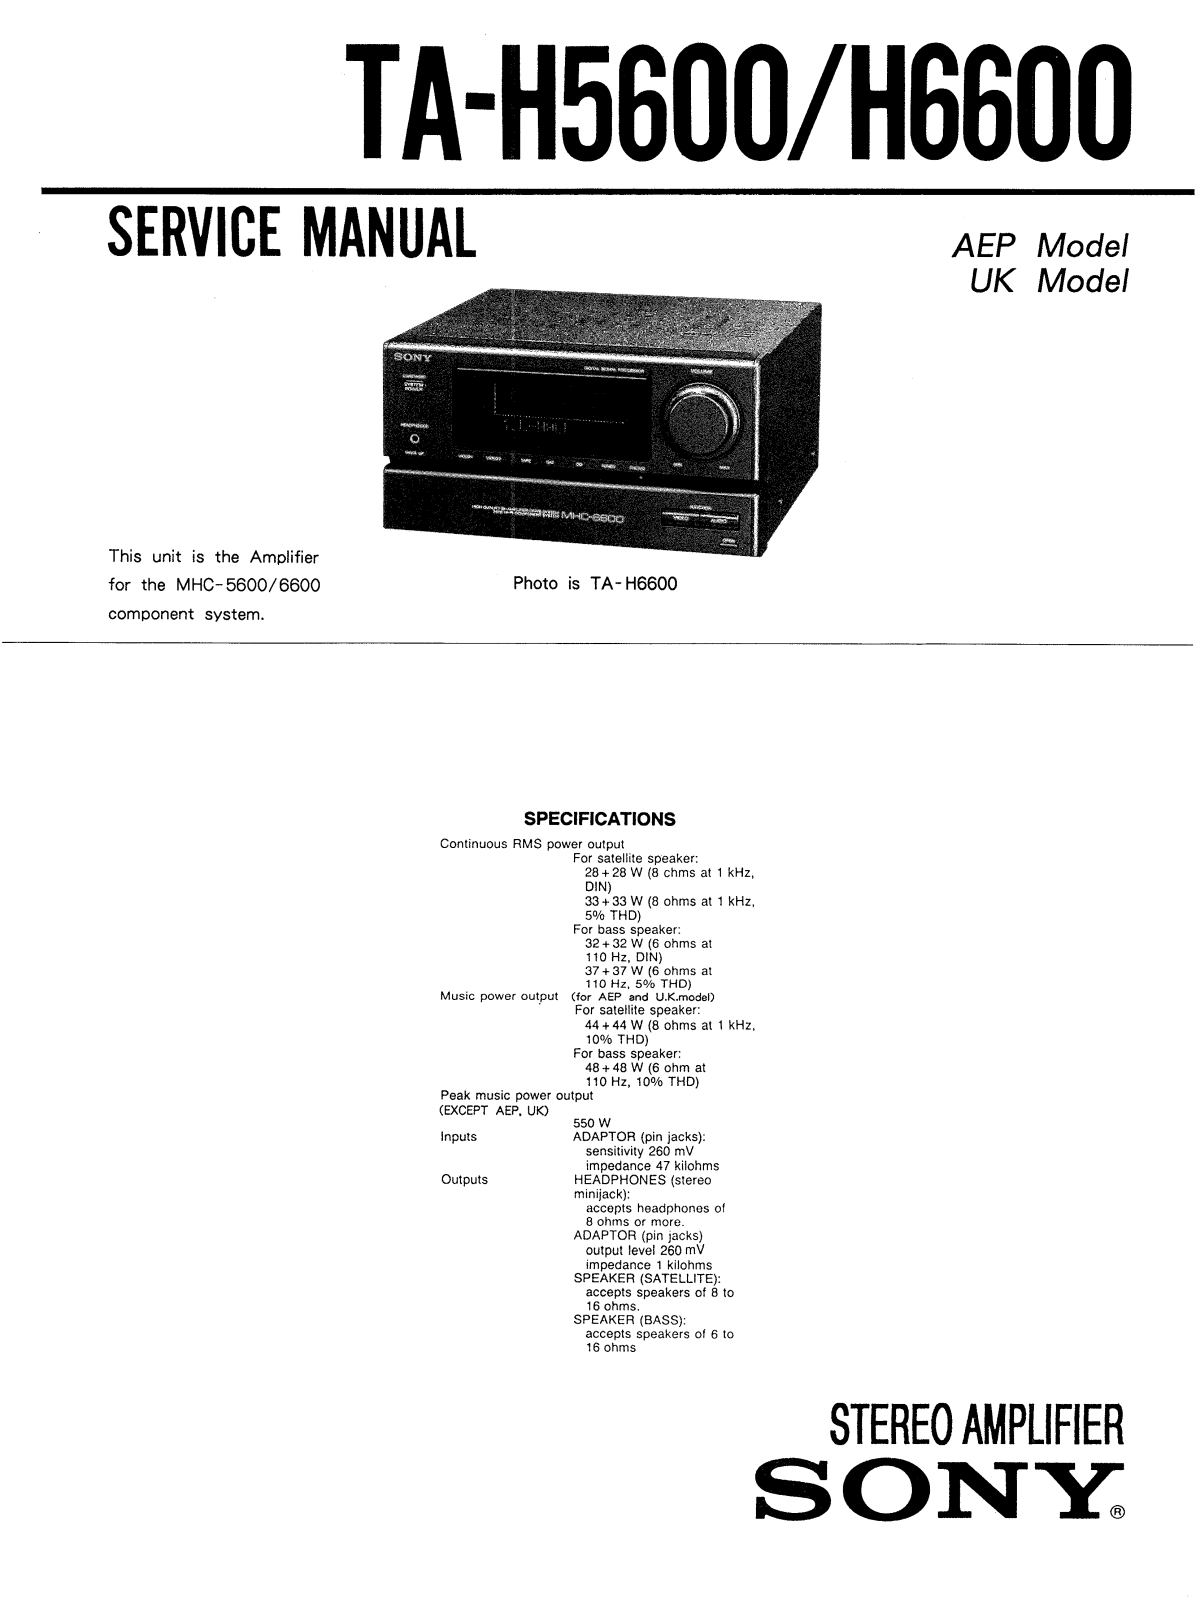 Toshiba TA H5600, TA H6600 Service Manual